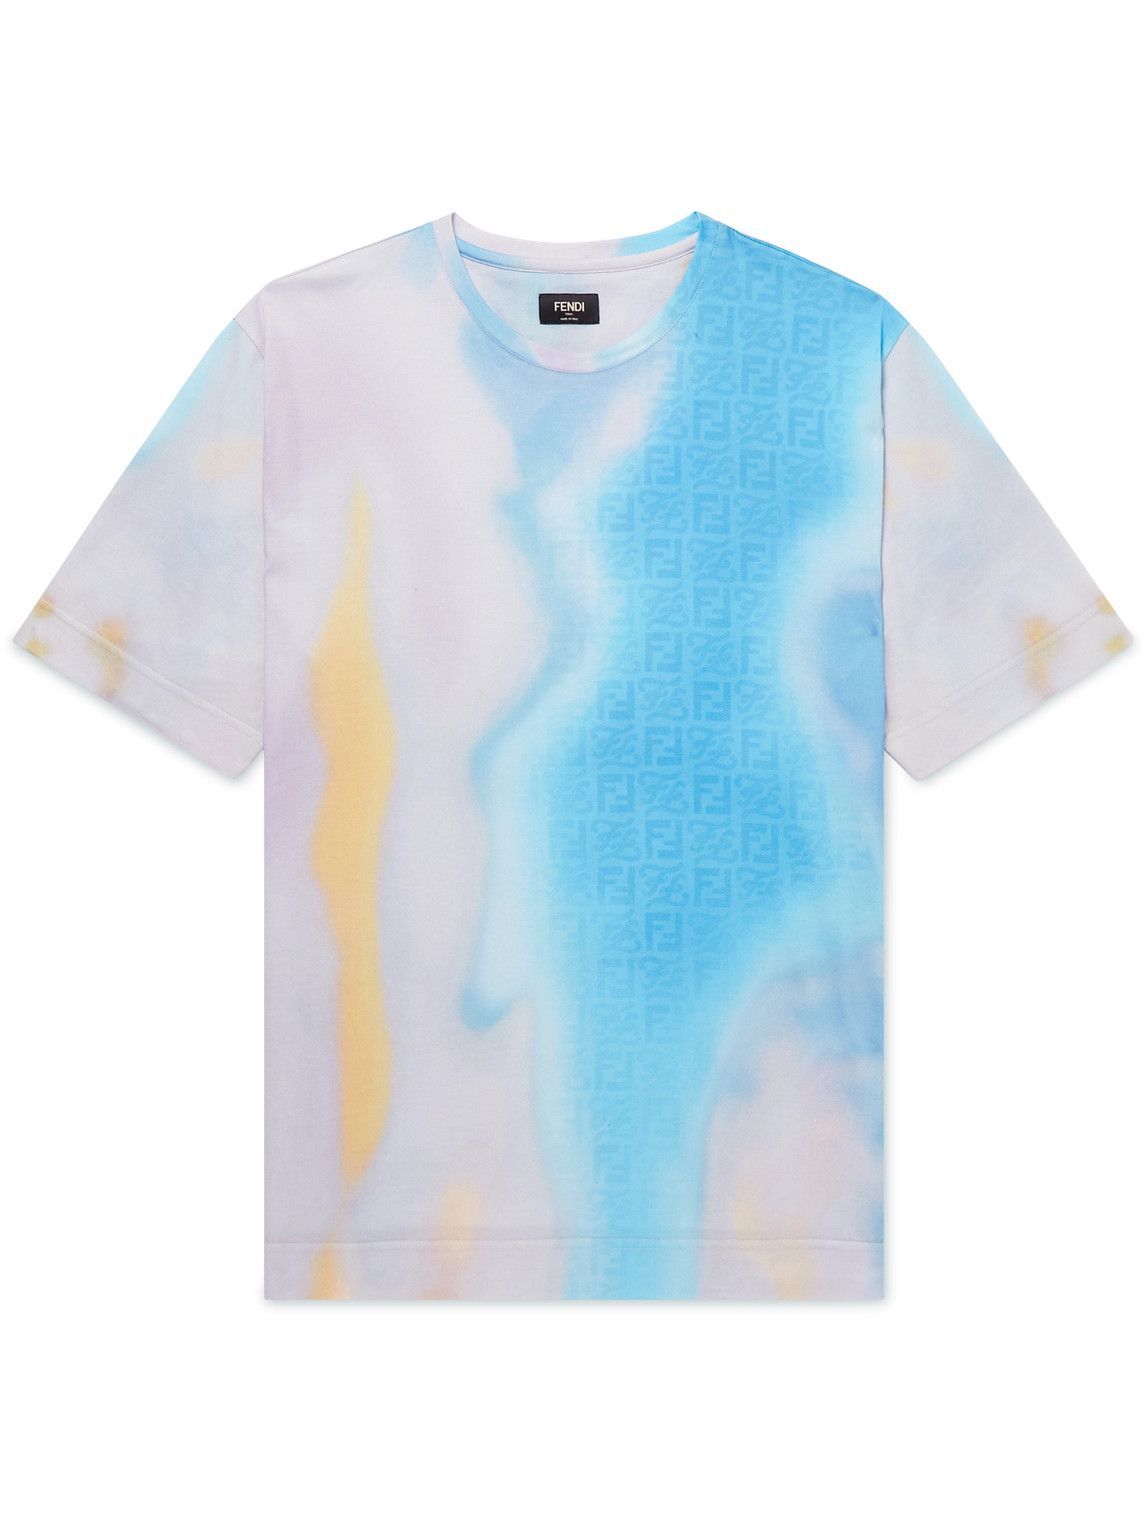 Photo: Fendi - Printed Cotton-Jersey T-Shirt - Multi